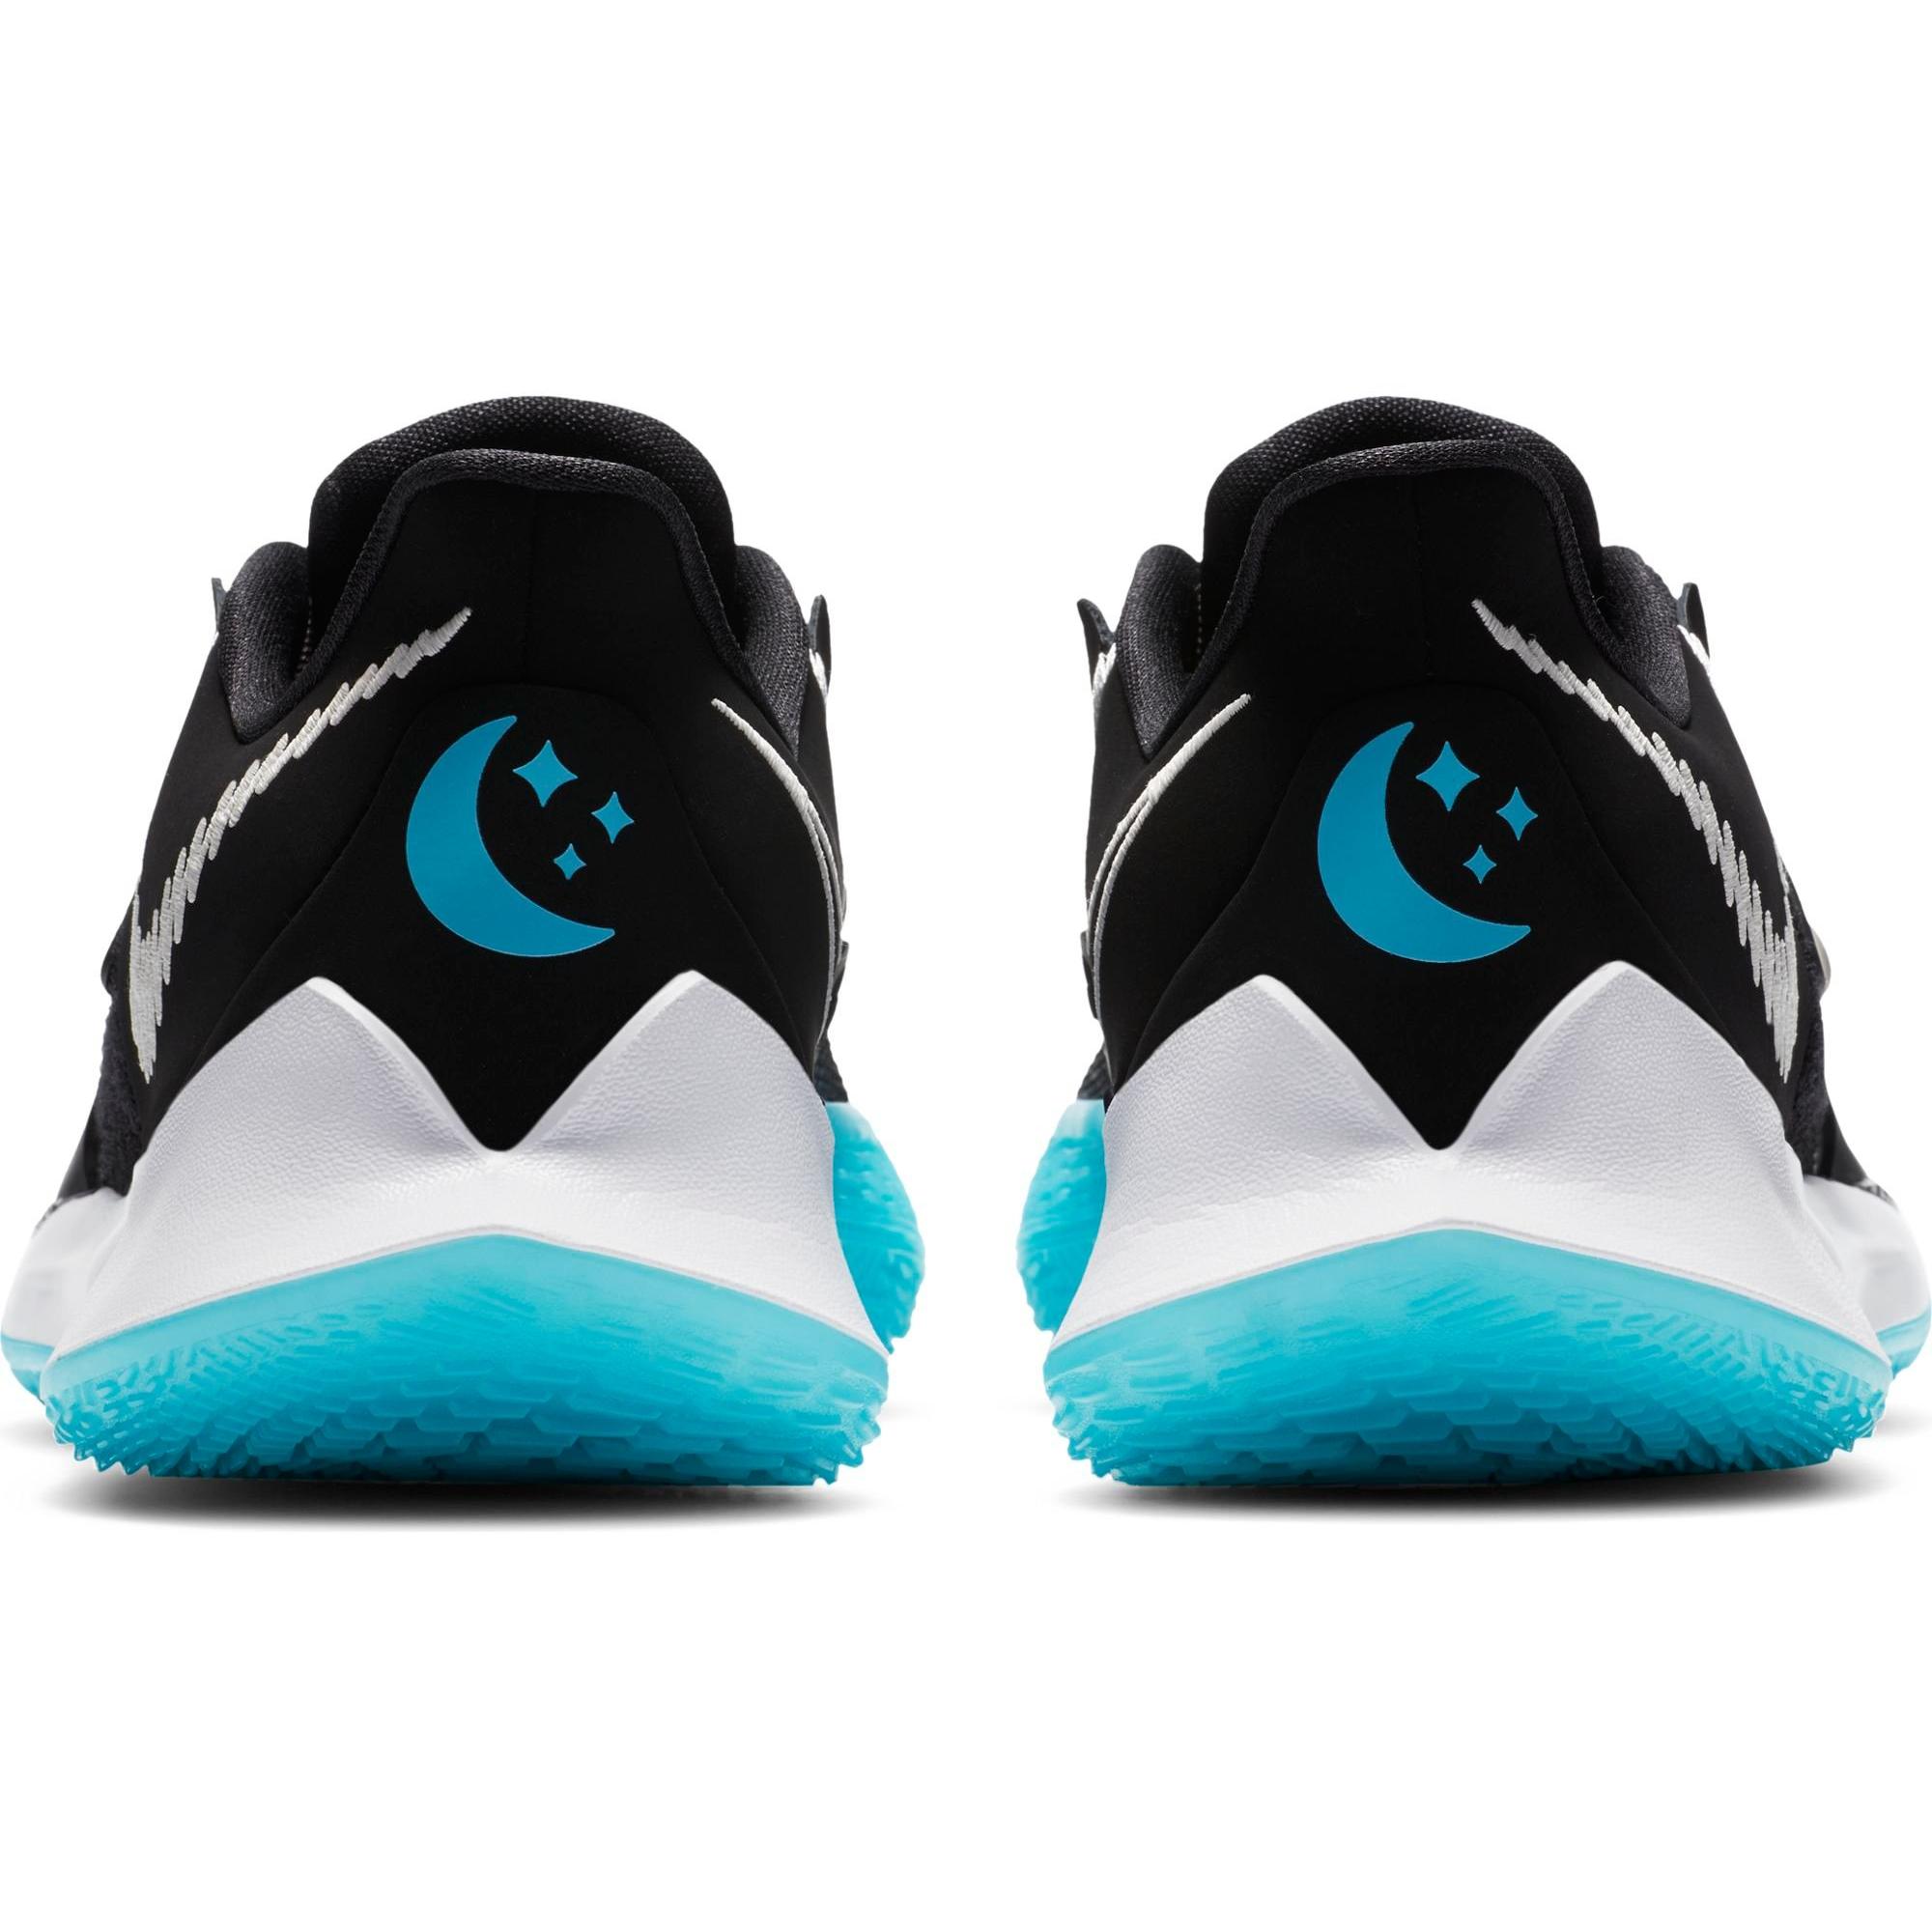 Sneakers Release – Nike Kyrie Low 3 “Moon” Men’s  Basketball Shoe